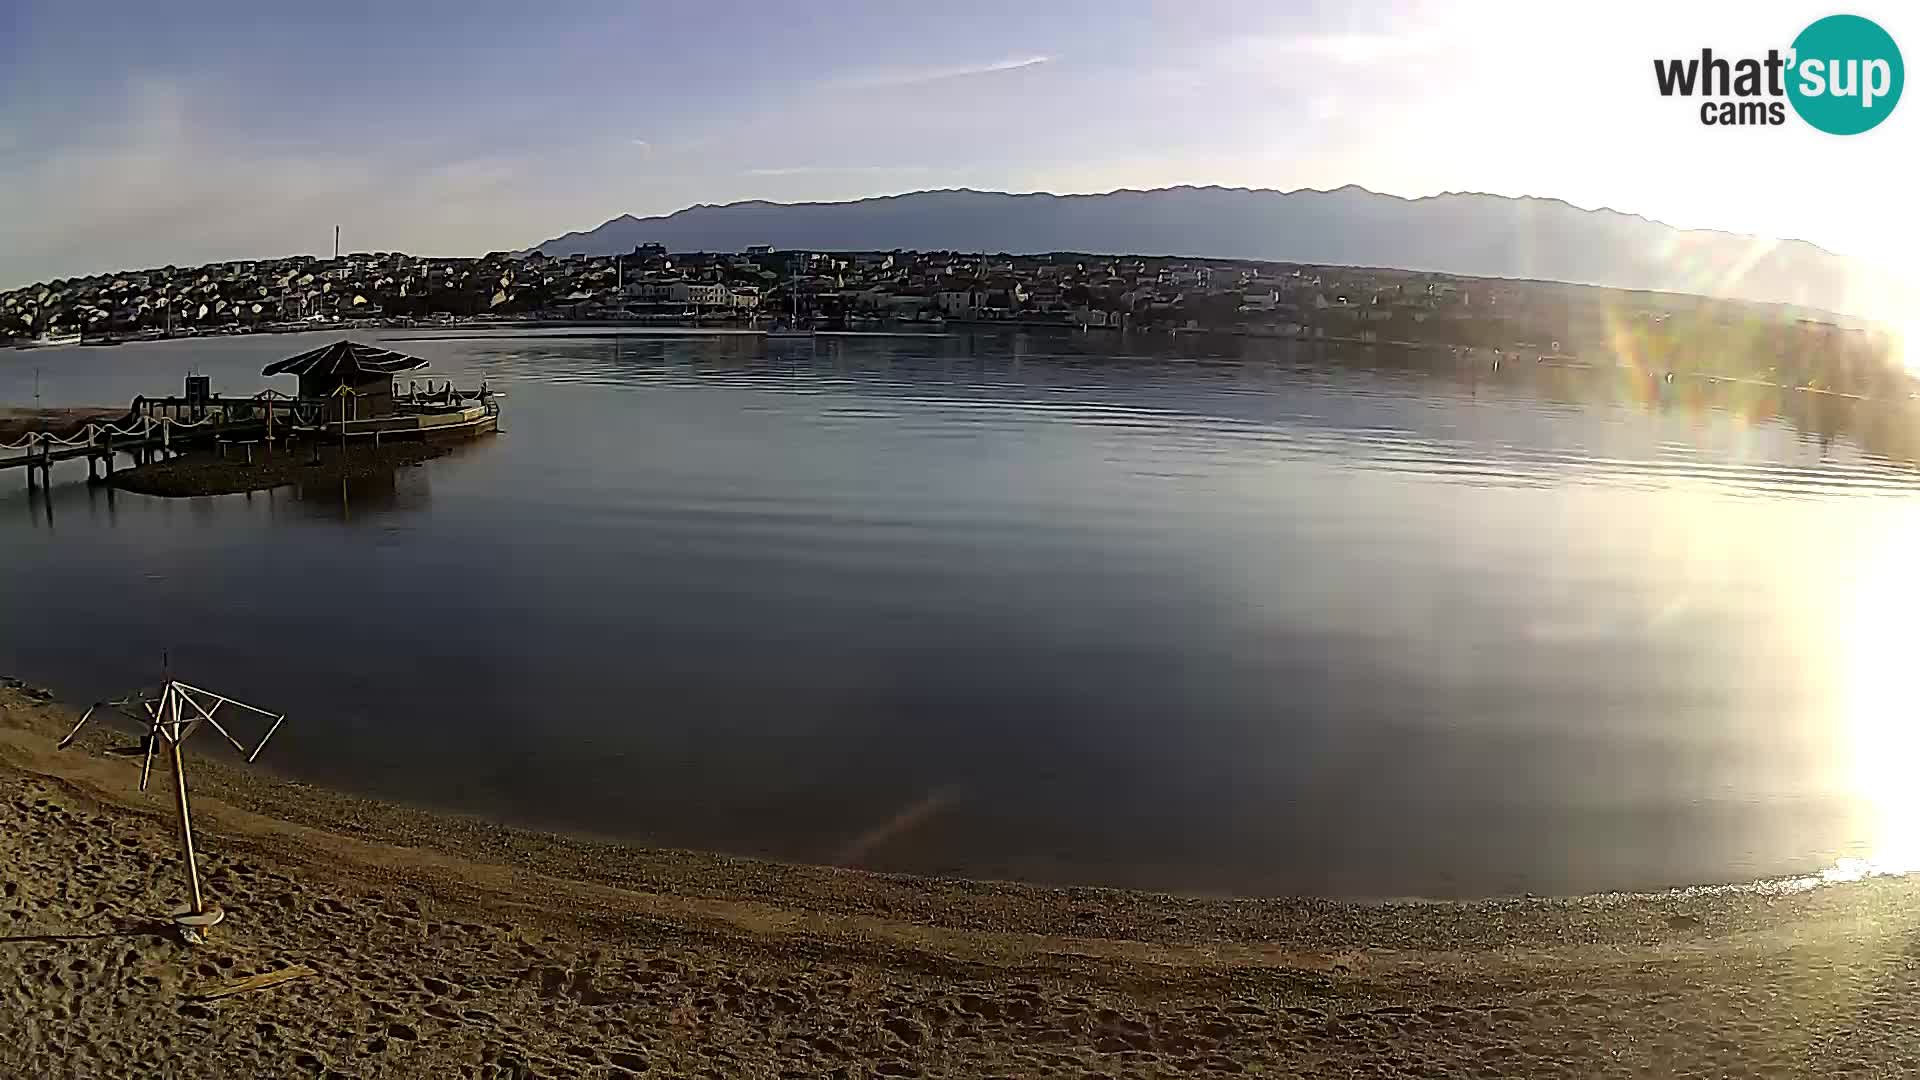 Novalja webcam – spiaggia cittadina